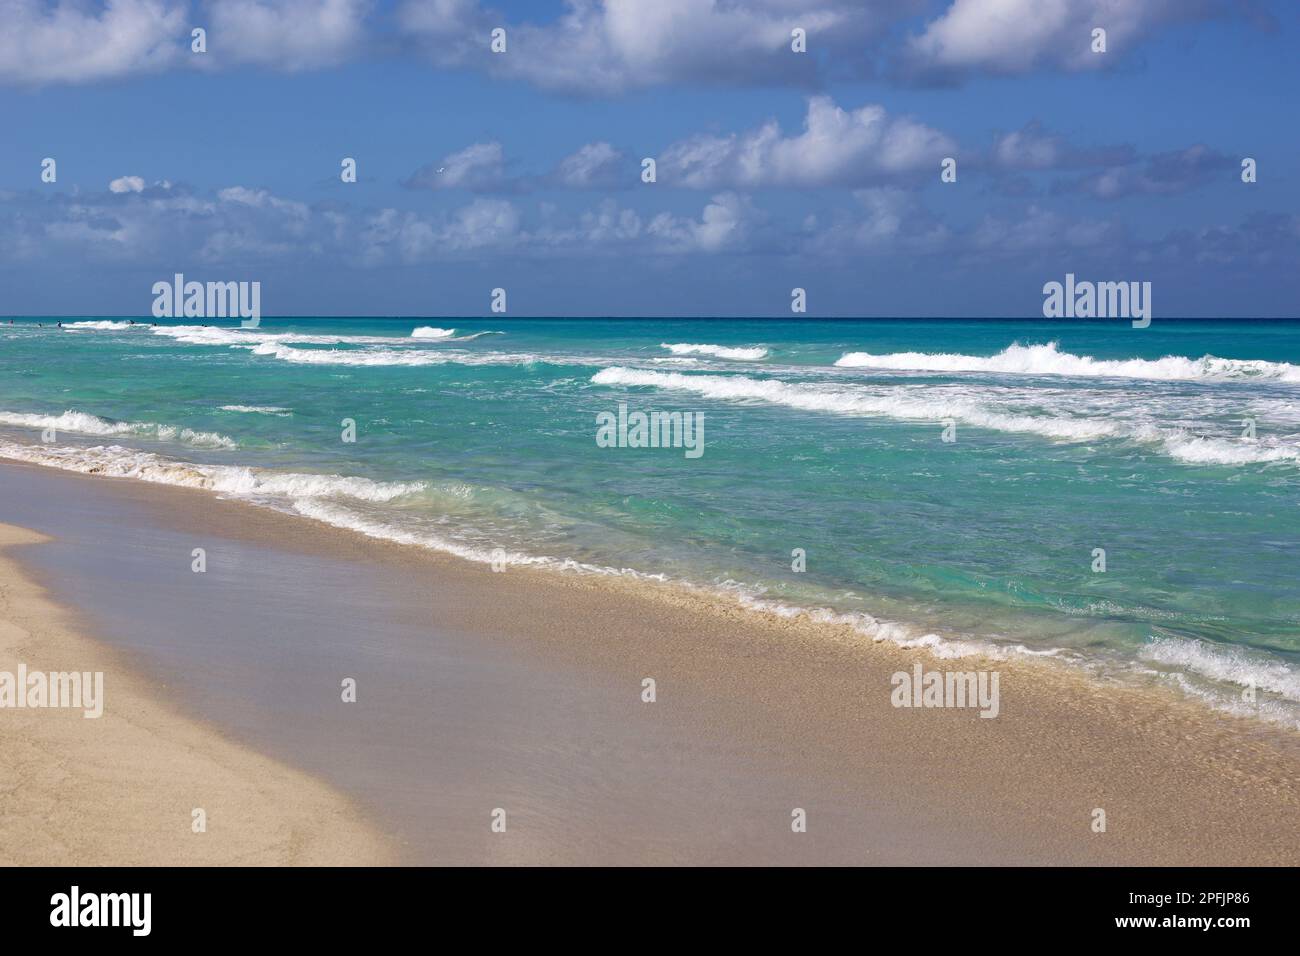 Plage tropicale avec sable sur un océan, vue sur les vagues d'azur et le ciel avec des nuages. Côte des Caraïbes, arrière-plan pour des vacances sur une nature paradisiaque Banque D'Images